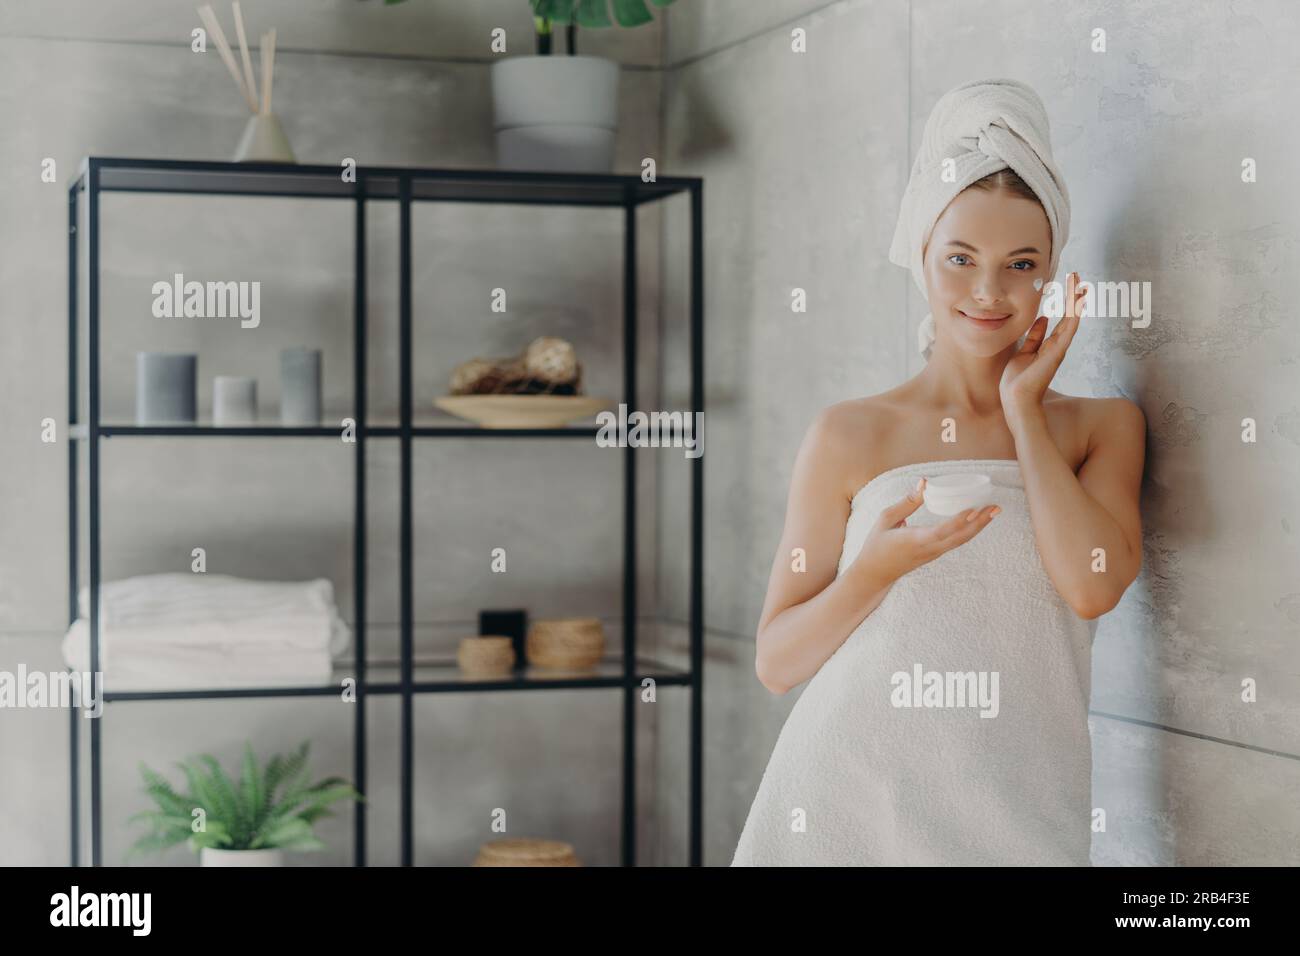 Modello sano utilizza la crema, tiene il vaso cosmetico, avvolto in asciugamano, vicino alla parete accogliente del bagno. Cura della pelle Foto Stock